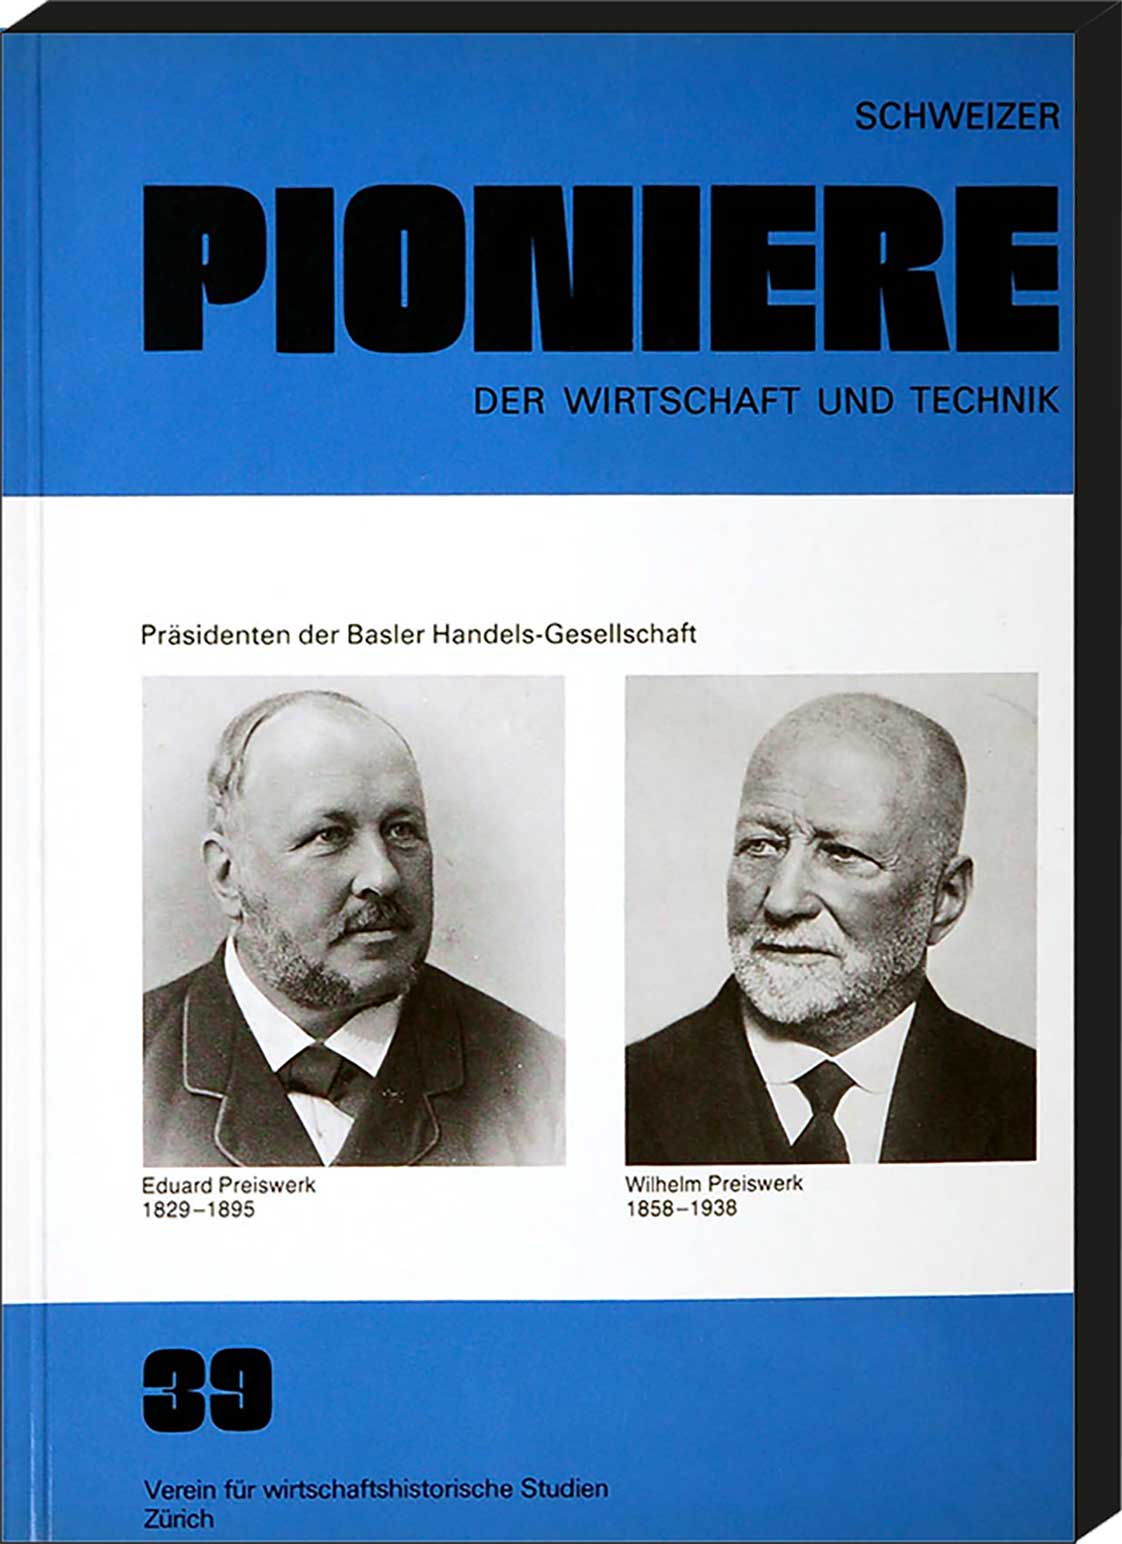  - Schweizer Pioniere der Wirtschaft und Technik, Band 39: Eduard und Wilhelm Preiswerk. Prsident der Basler Handels-Gesellschaft. Von Gustaf Adolf Wanner, Basel.